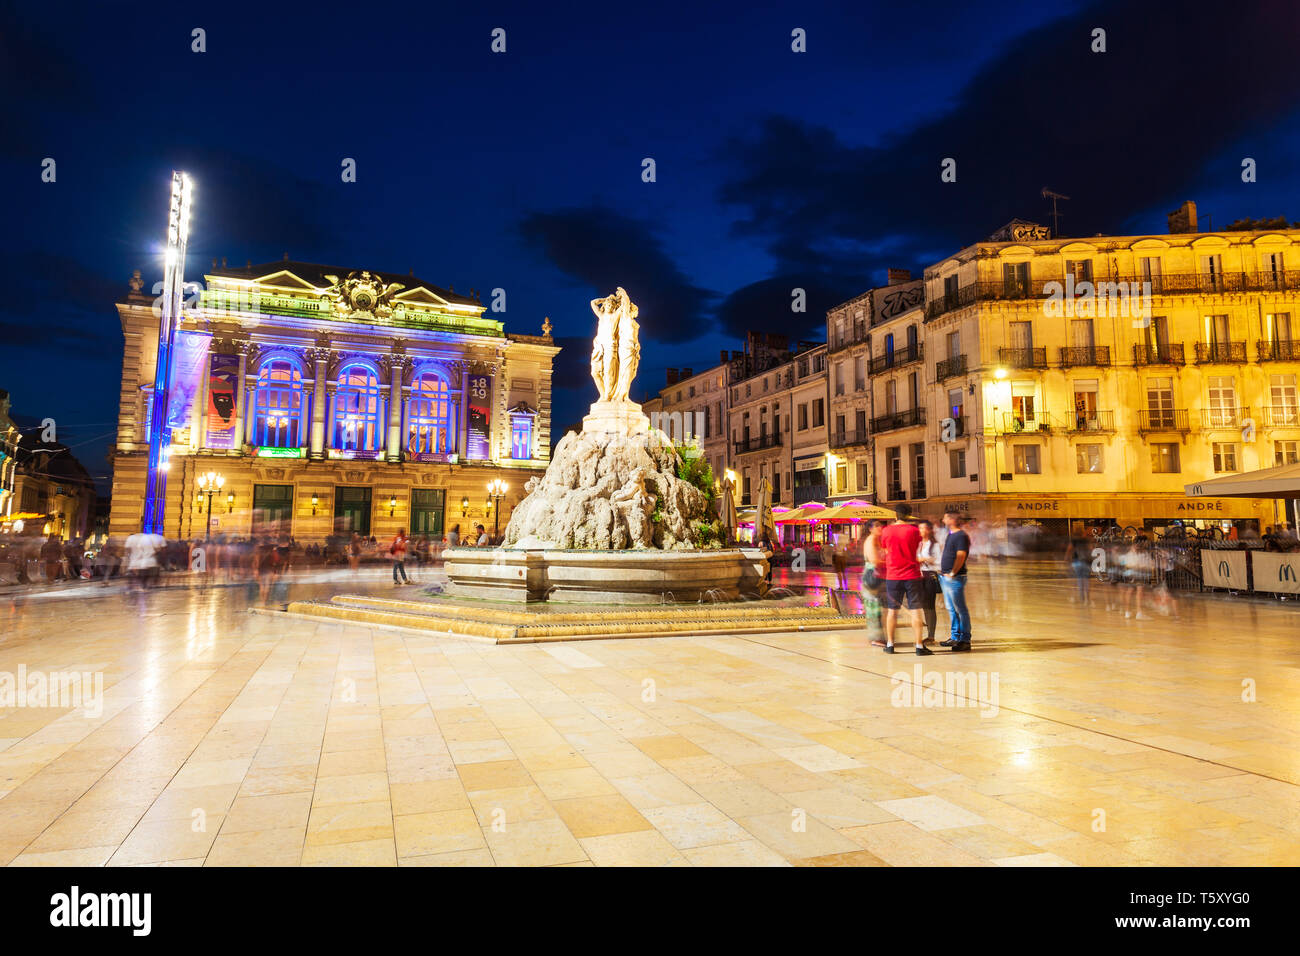 MONTPELLIER, Francia - 21 de septiembre de 2018: Fuente de las tres Gracias  en la Place de la comedie, plaza principal de la ciudad de Montpellier, en  el sur de Francia Fotografía